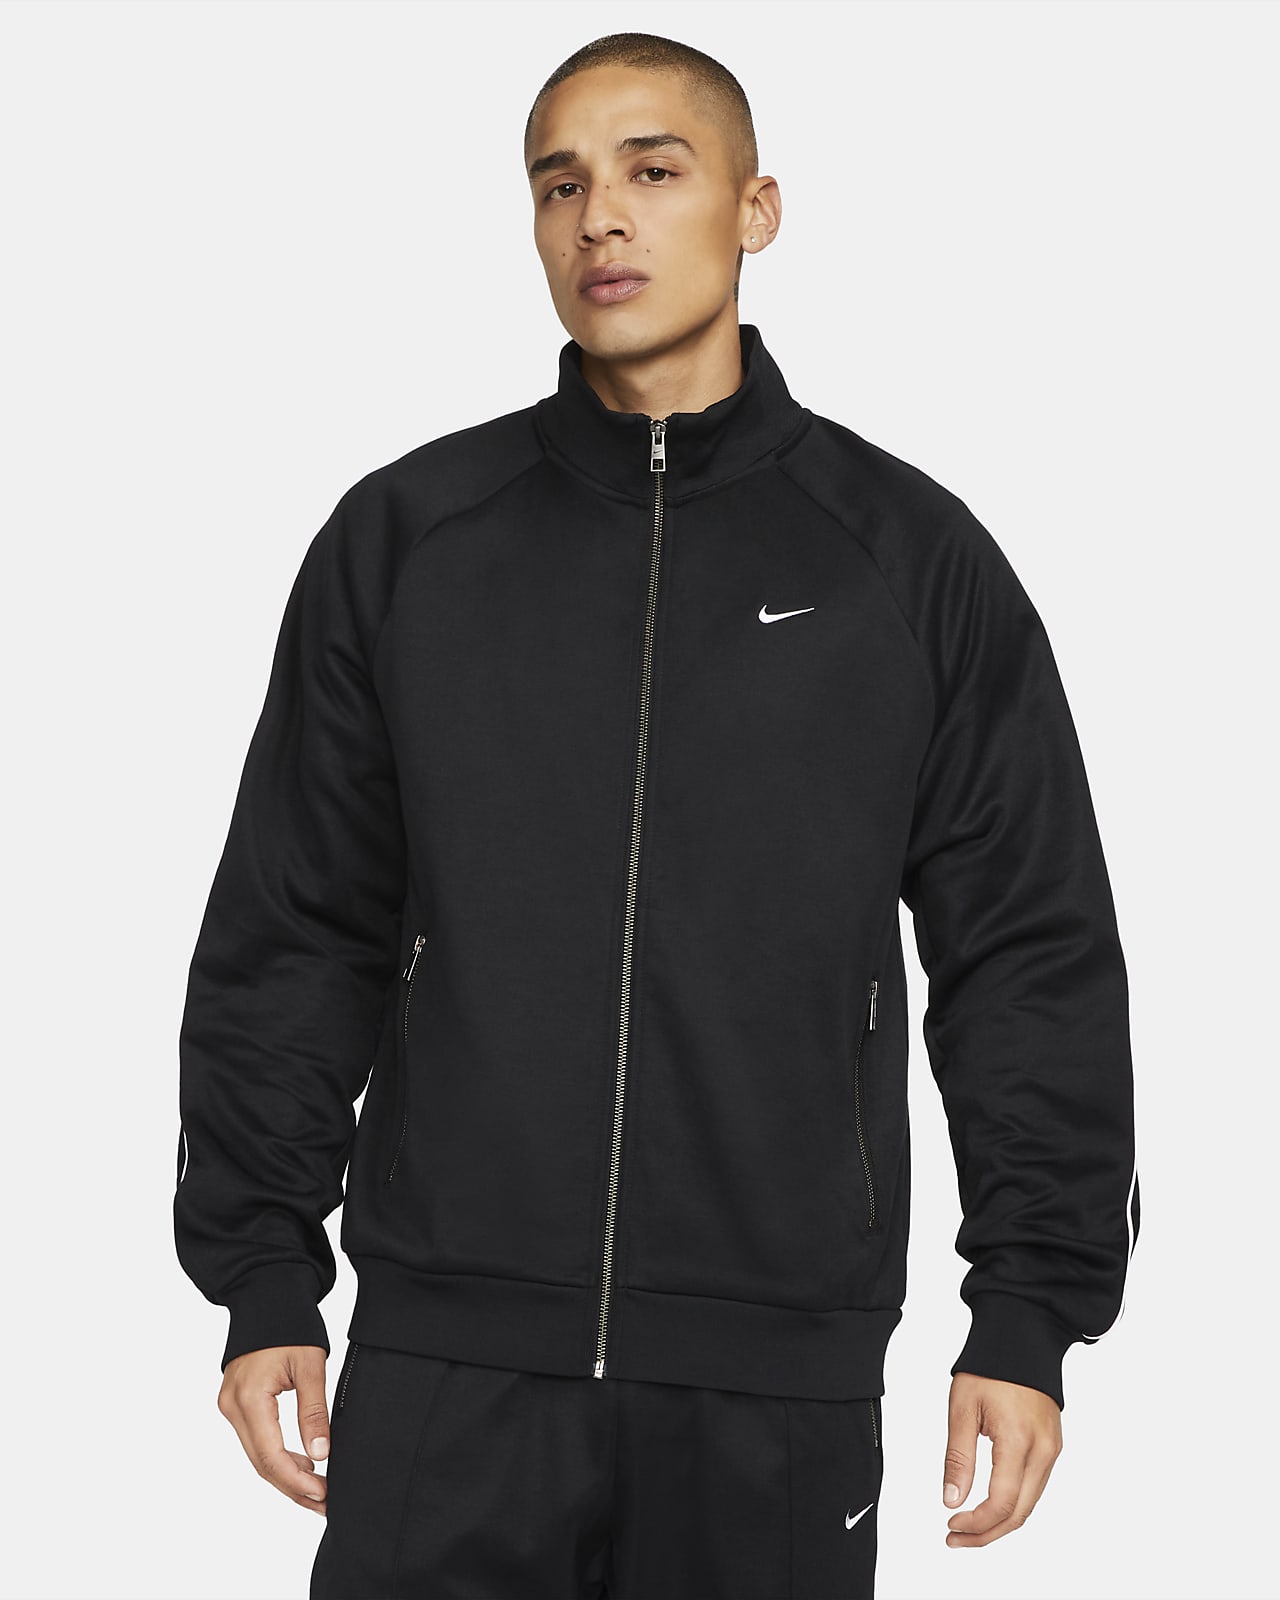 Nike Sportswear Men's Nike.com